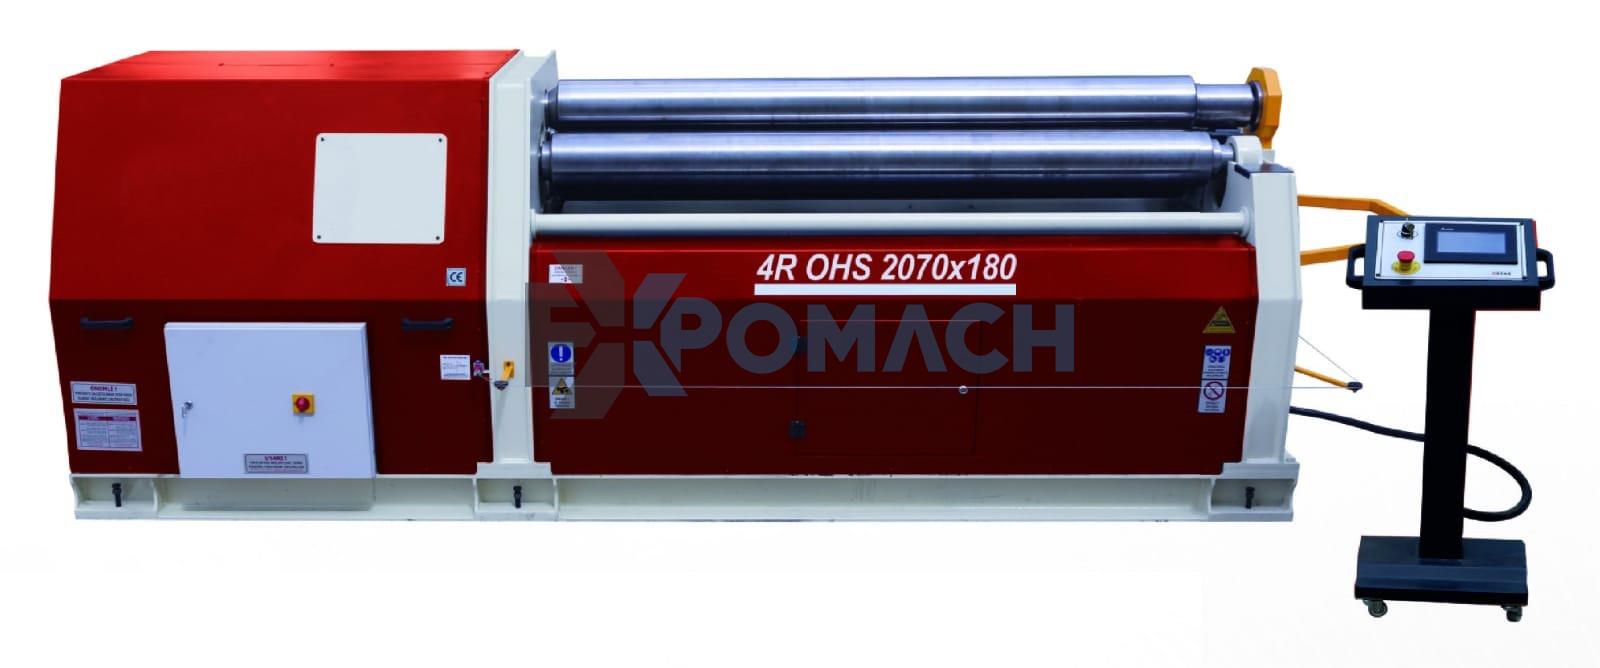 2070 x 180 x 4 Roll Hydraulic Cylinder Machine - 4 batch Hydraulic cylinder